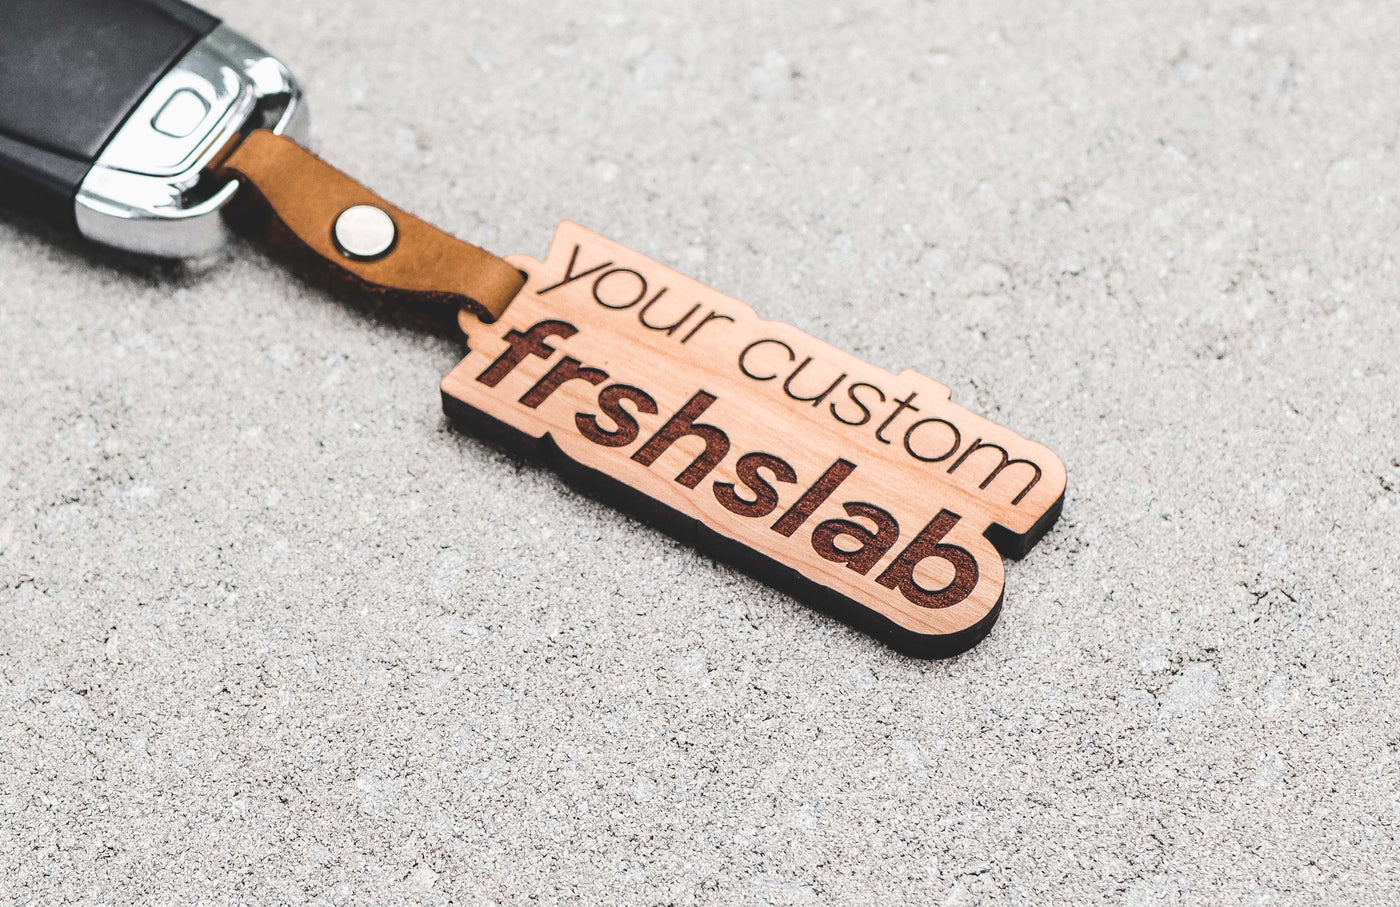 Your Custom Frshslabs Keychain